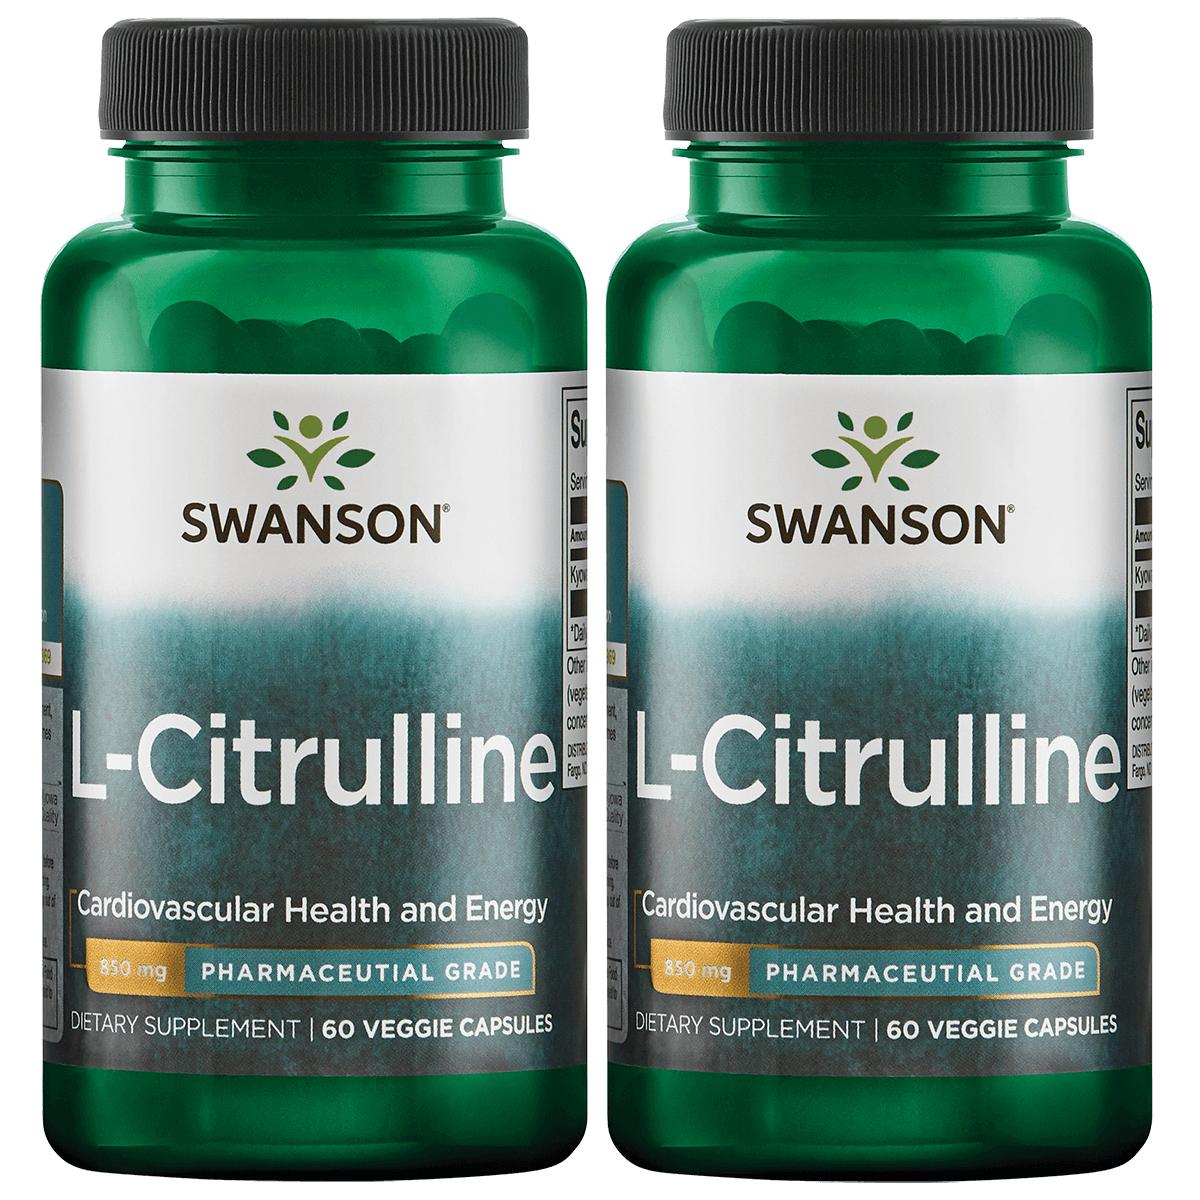 Swanson Ultra L-Citrulline - Pharmaceutical Grade 2 Pack Vitamin 850 mg 60 Veg Caps